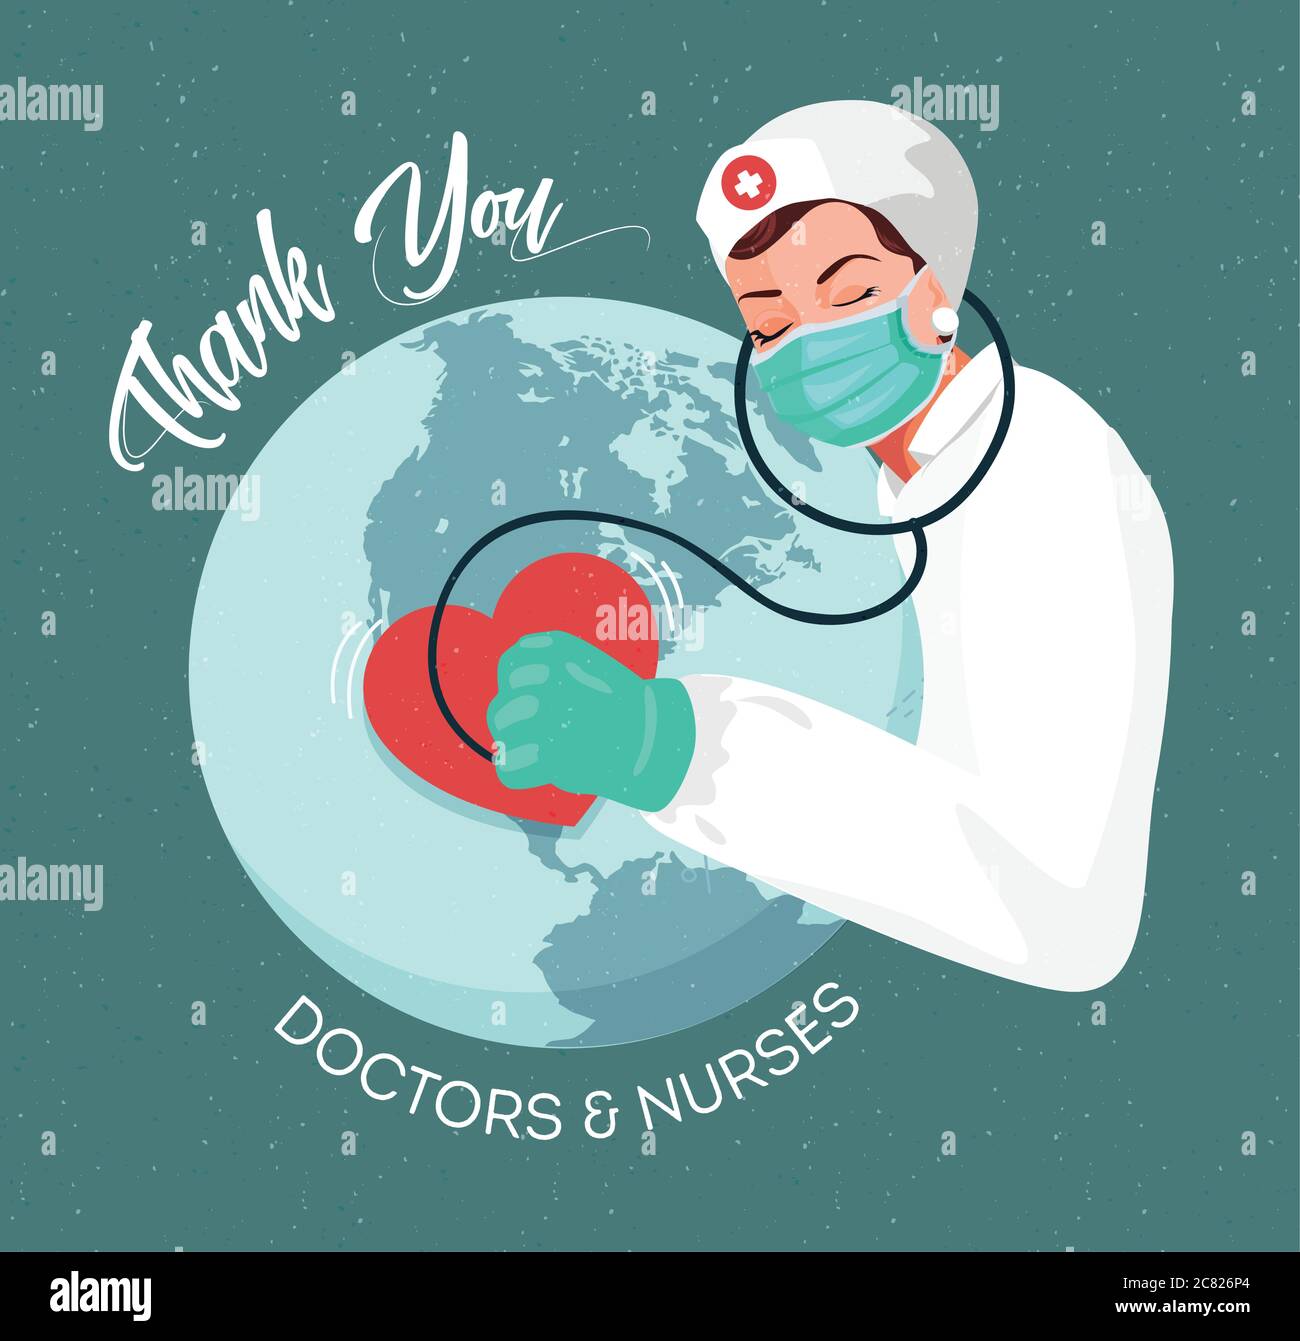 Vielen Dank an Ärzte und Krankenschwestern, die in den Krankenhäusern arbeiten und gegen das Coronavirus kämpfen. Frauen Krankenschwester mit Globus, flache Illustration Frau Arzt Vektor Stock Vektor